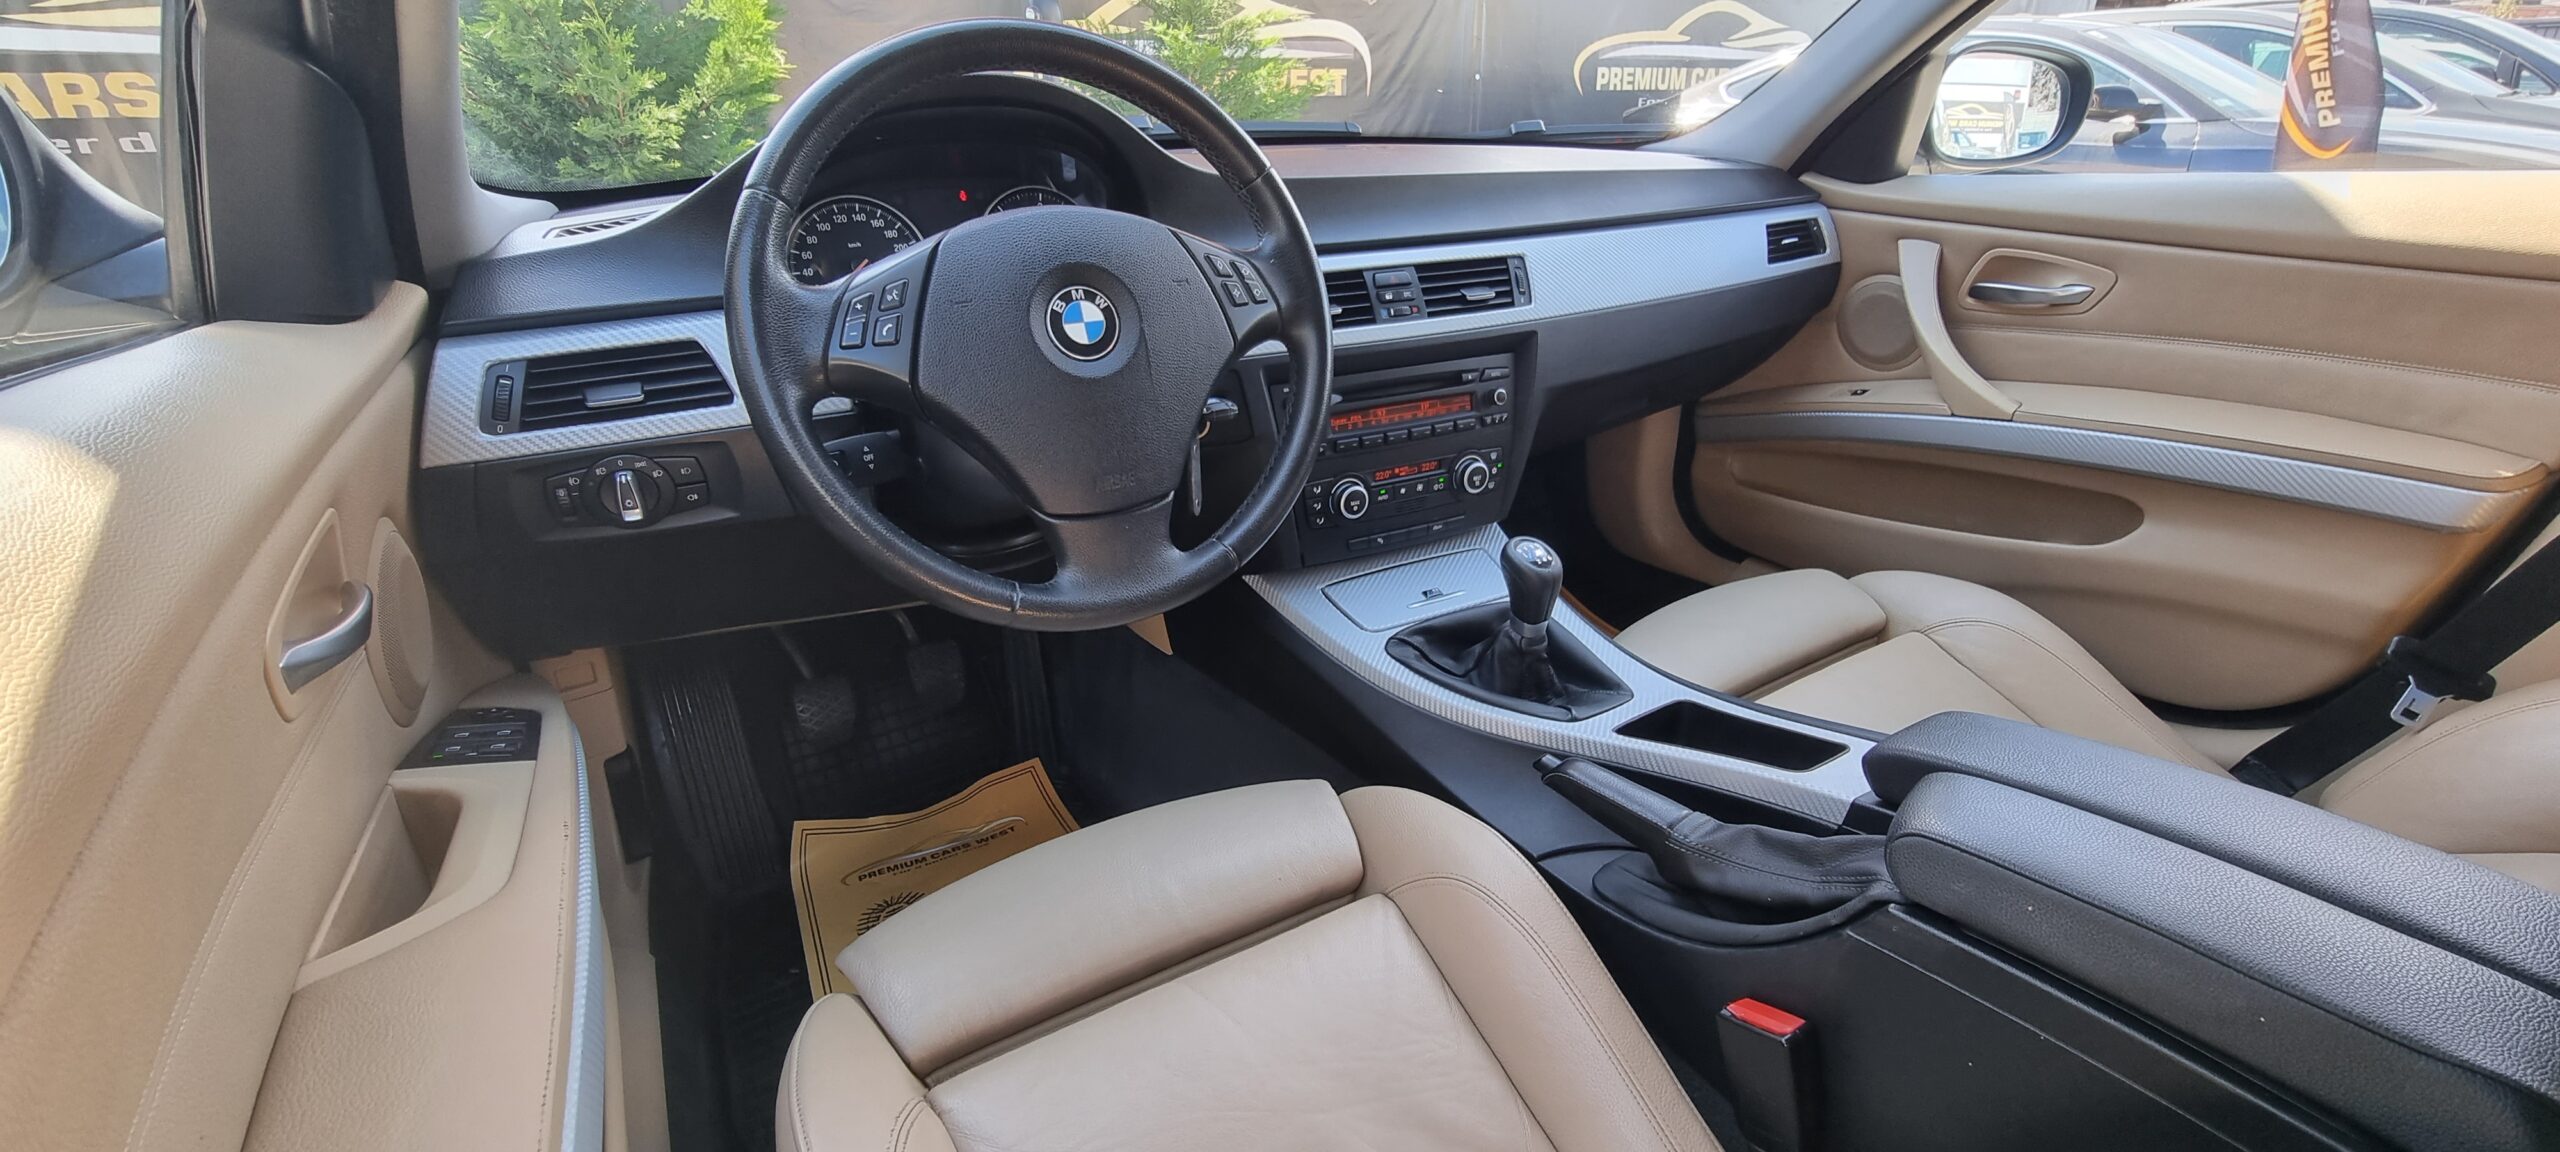 BMW SERIA 3, 2.0 DIESEL, 177 CP, EURO 5, AN 2008